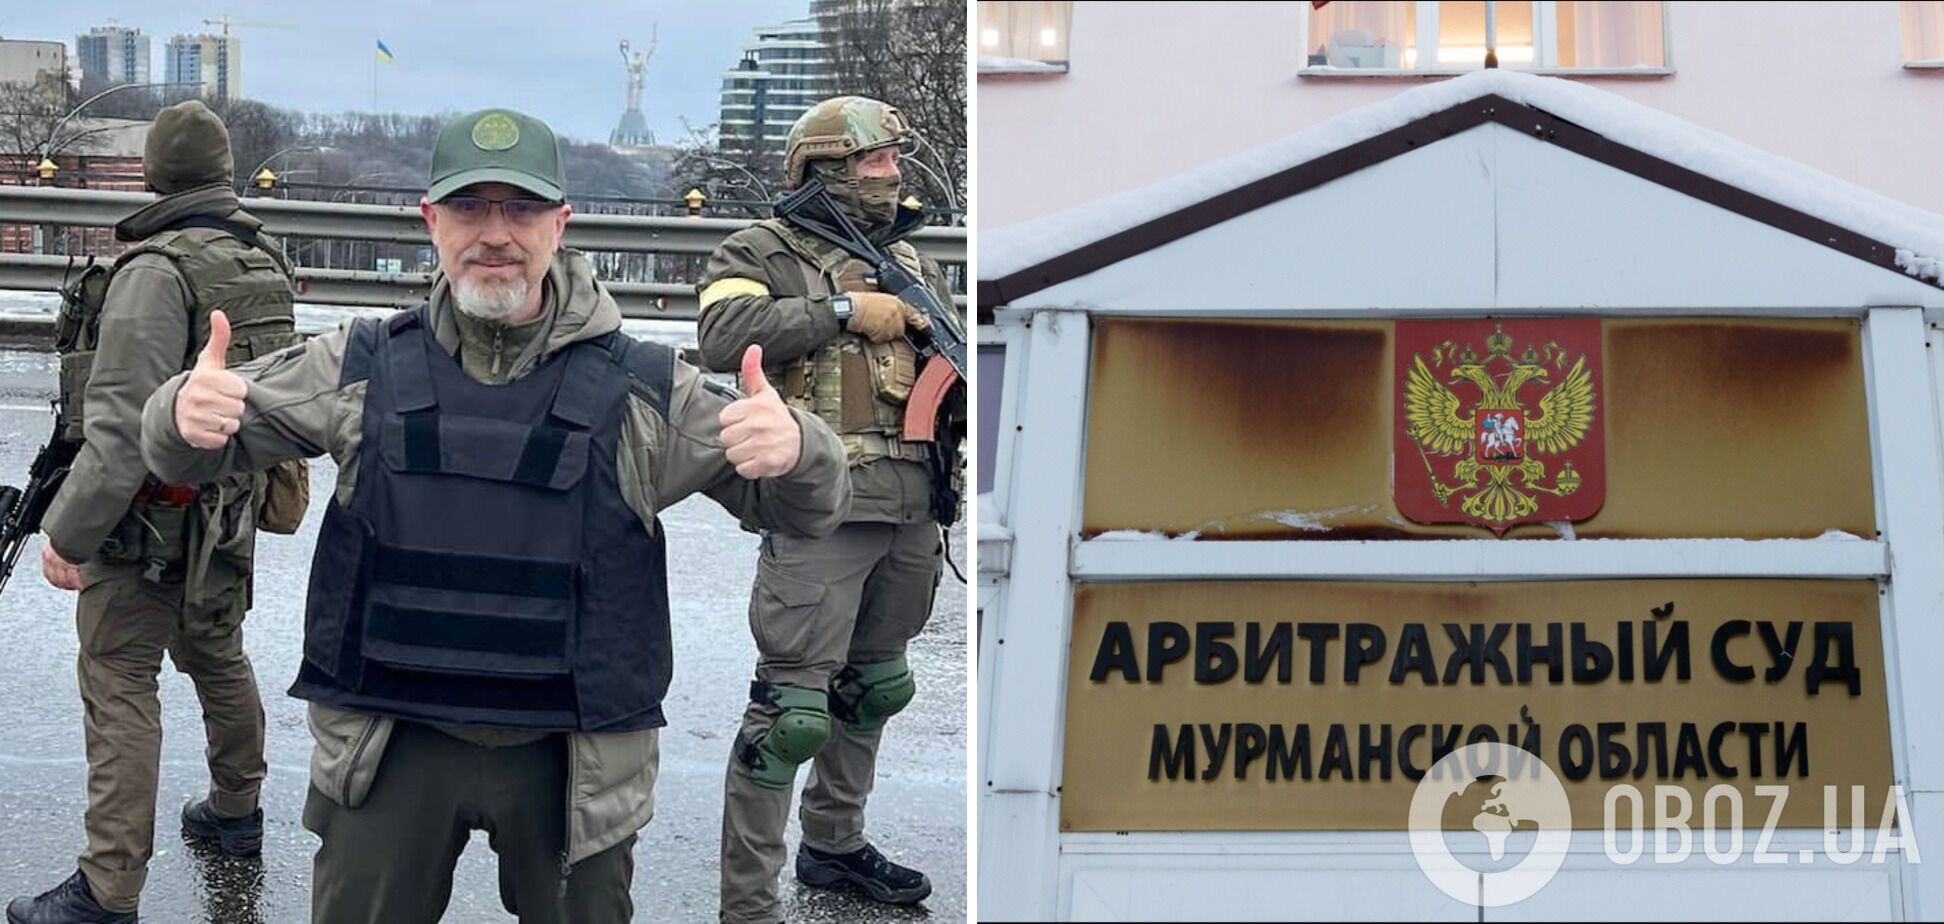 Суд обязал жителя Мурманска финансировать Вооруженные силы Украины: детали решения